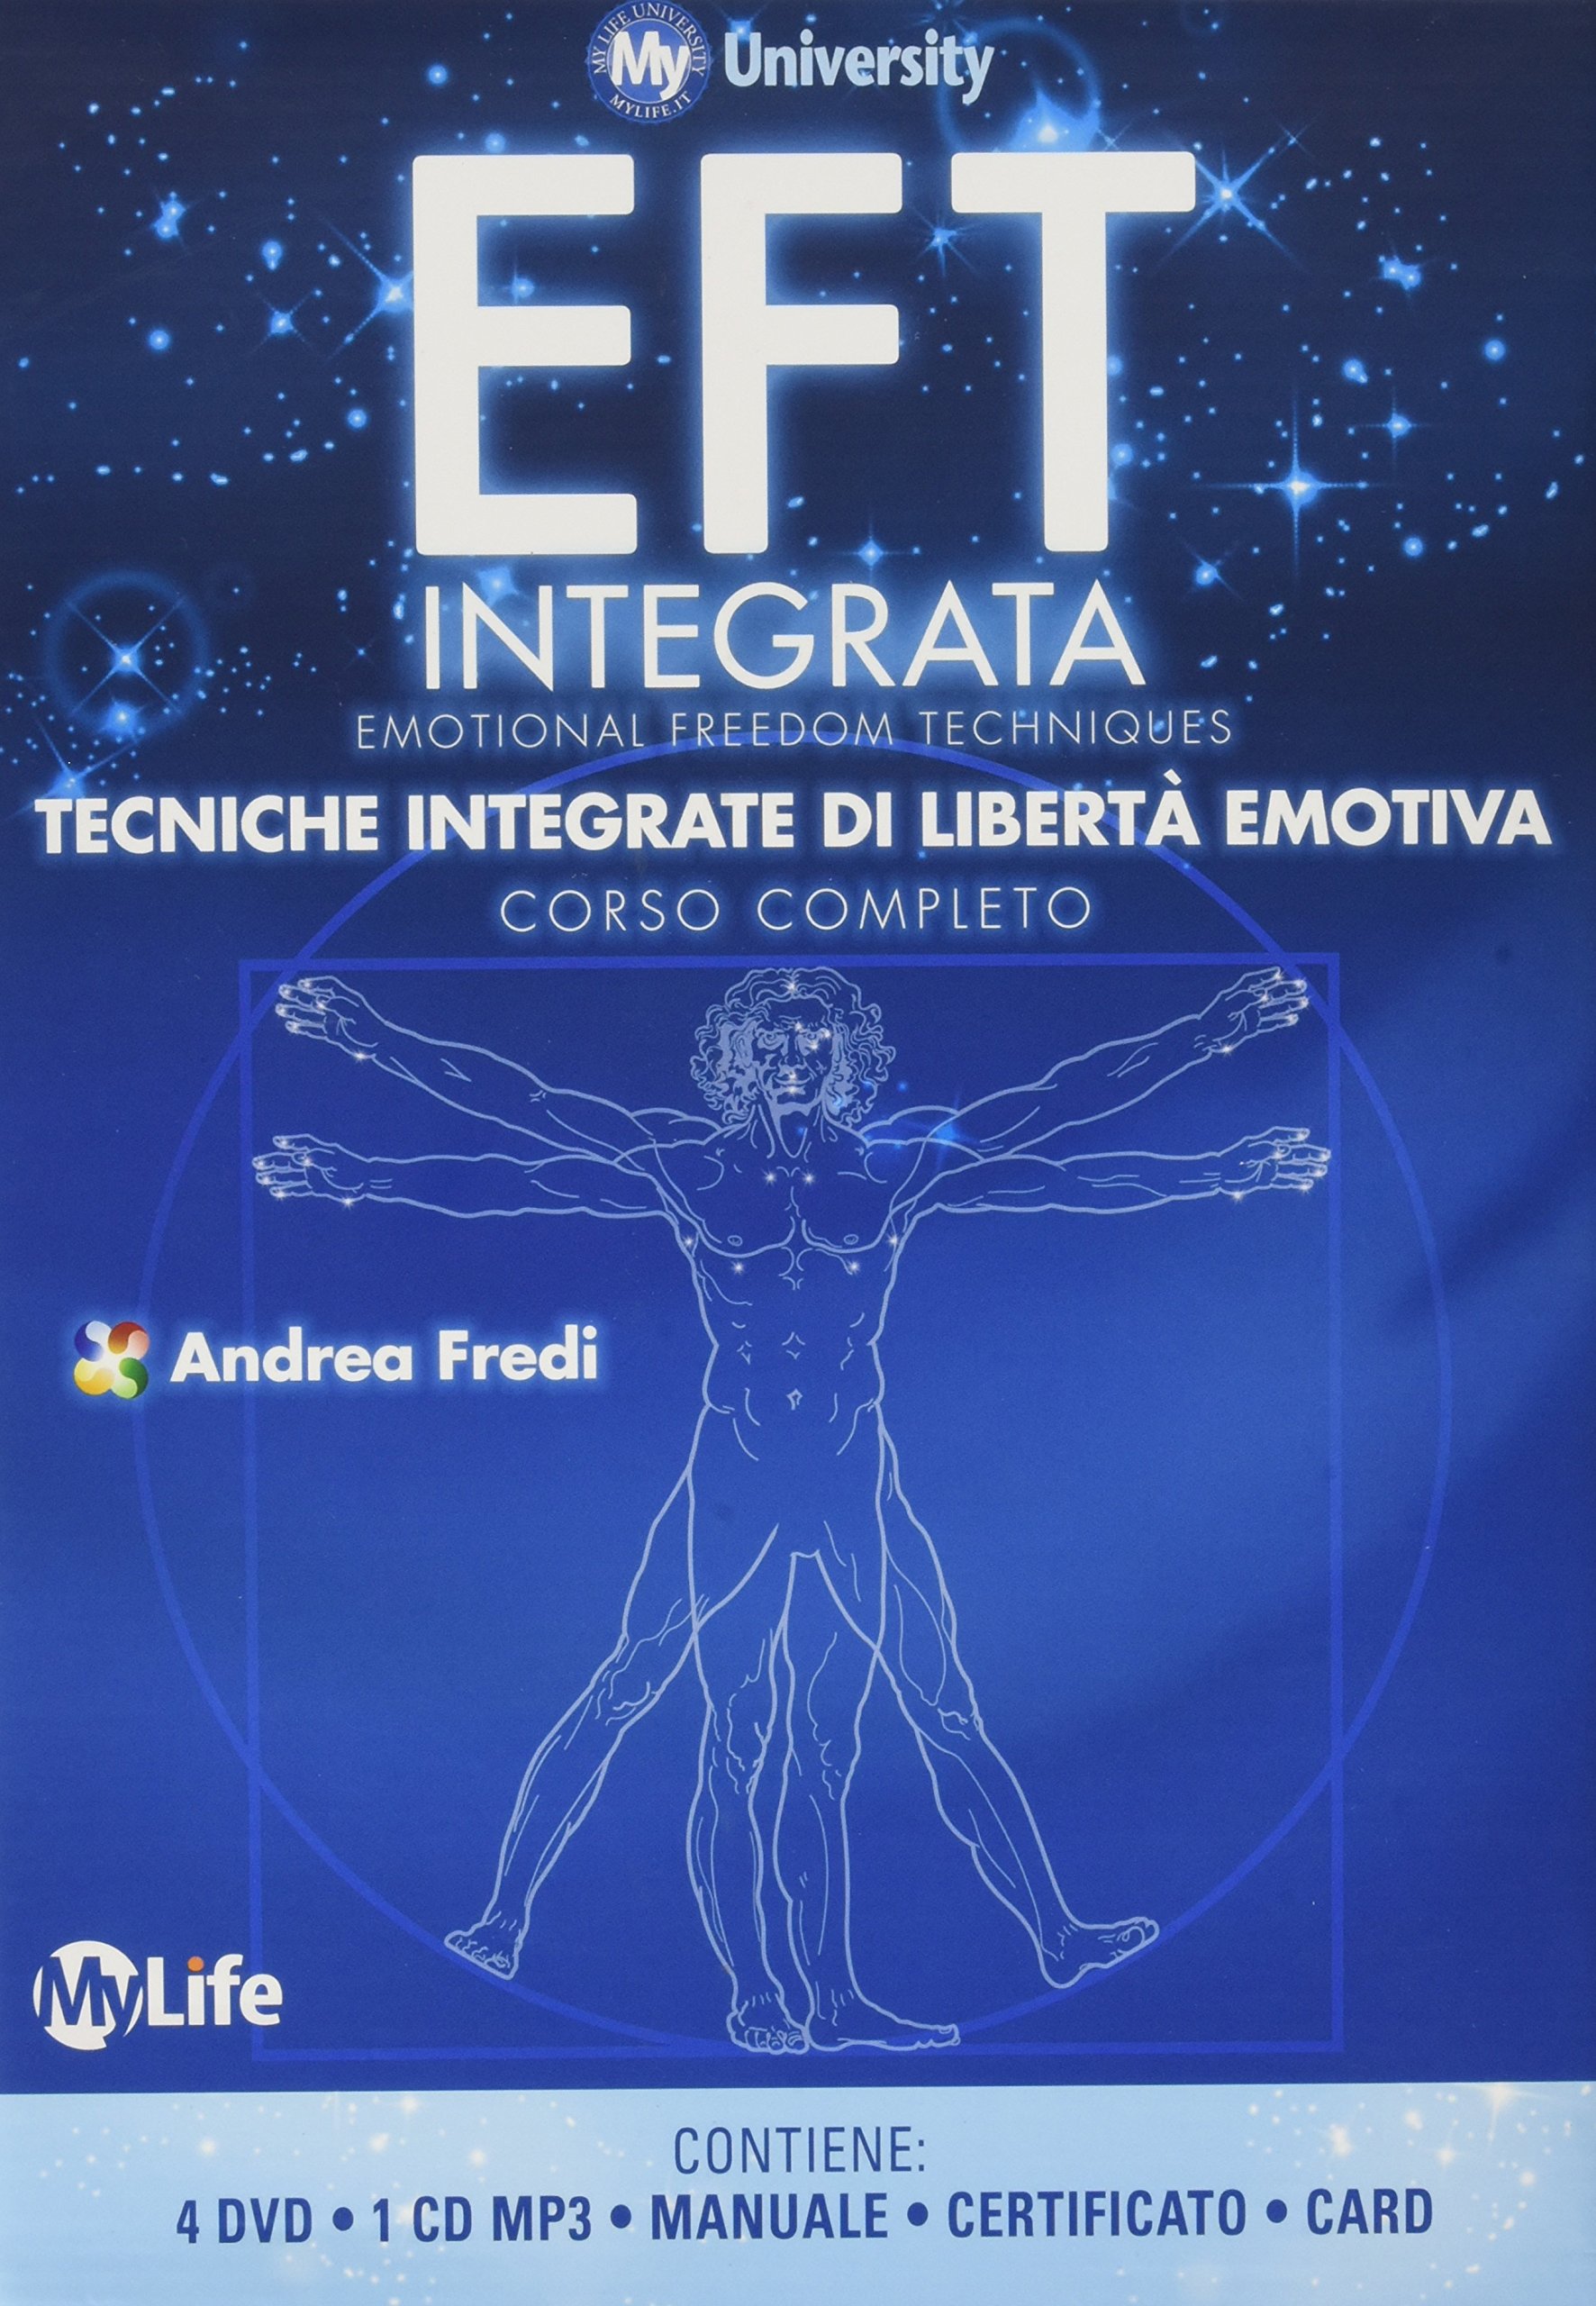 Andrea Fredi - Integrated EFT